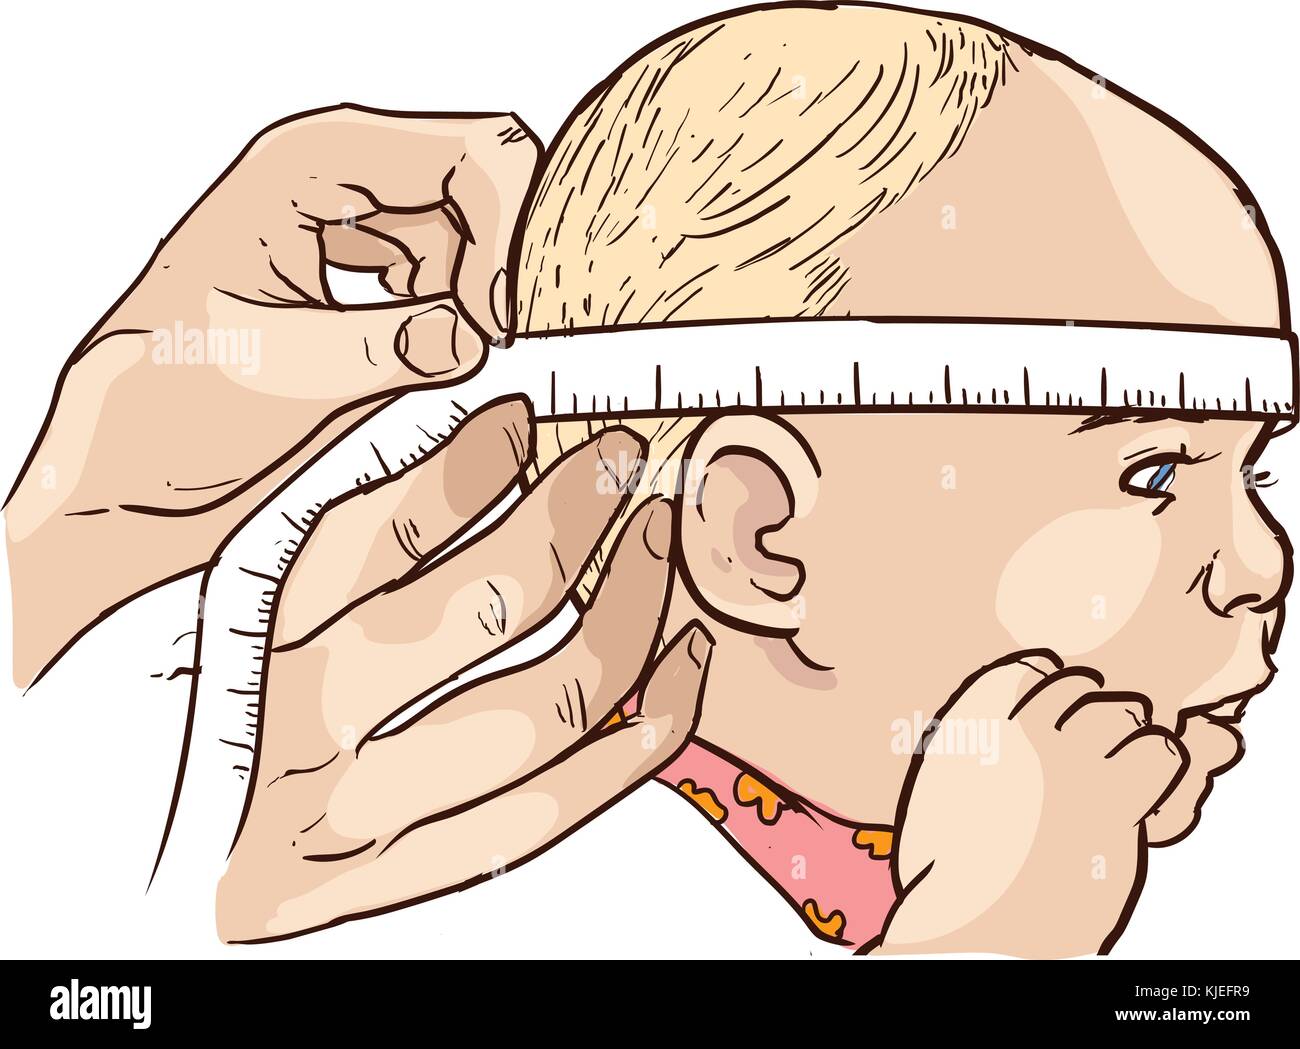 Алгоритм окружности головы. Измерение окружности головы новорожденного. Измерение окружности головы алгоритм. Измерение окружности головы у детей алгоритм. Измерение окружности головы у детей до 1 года.